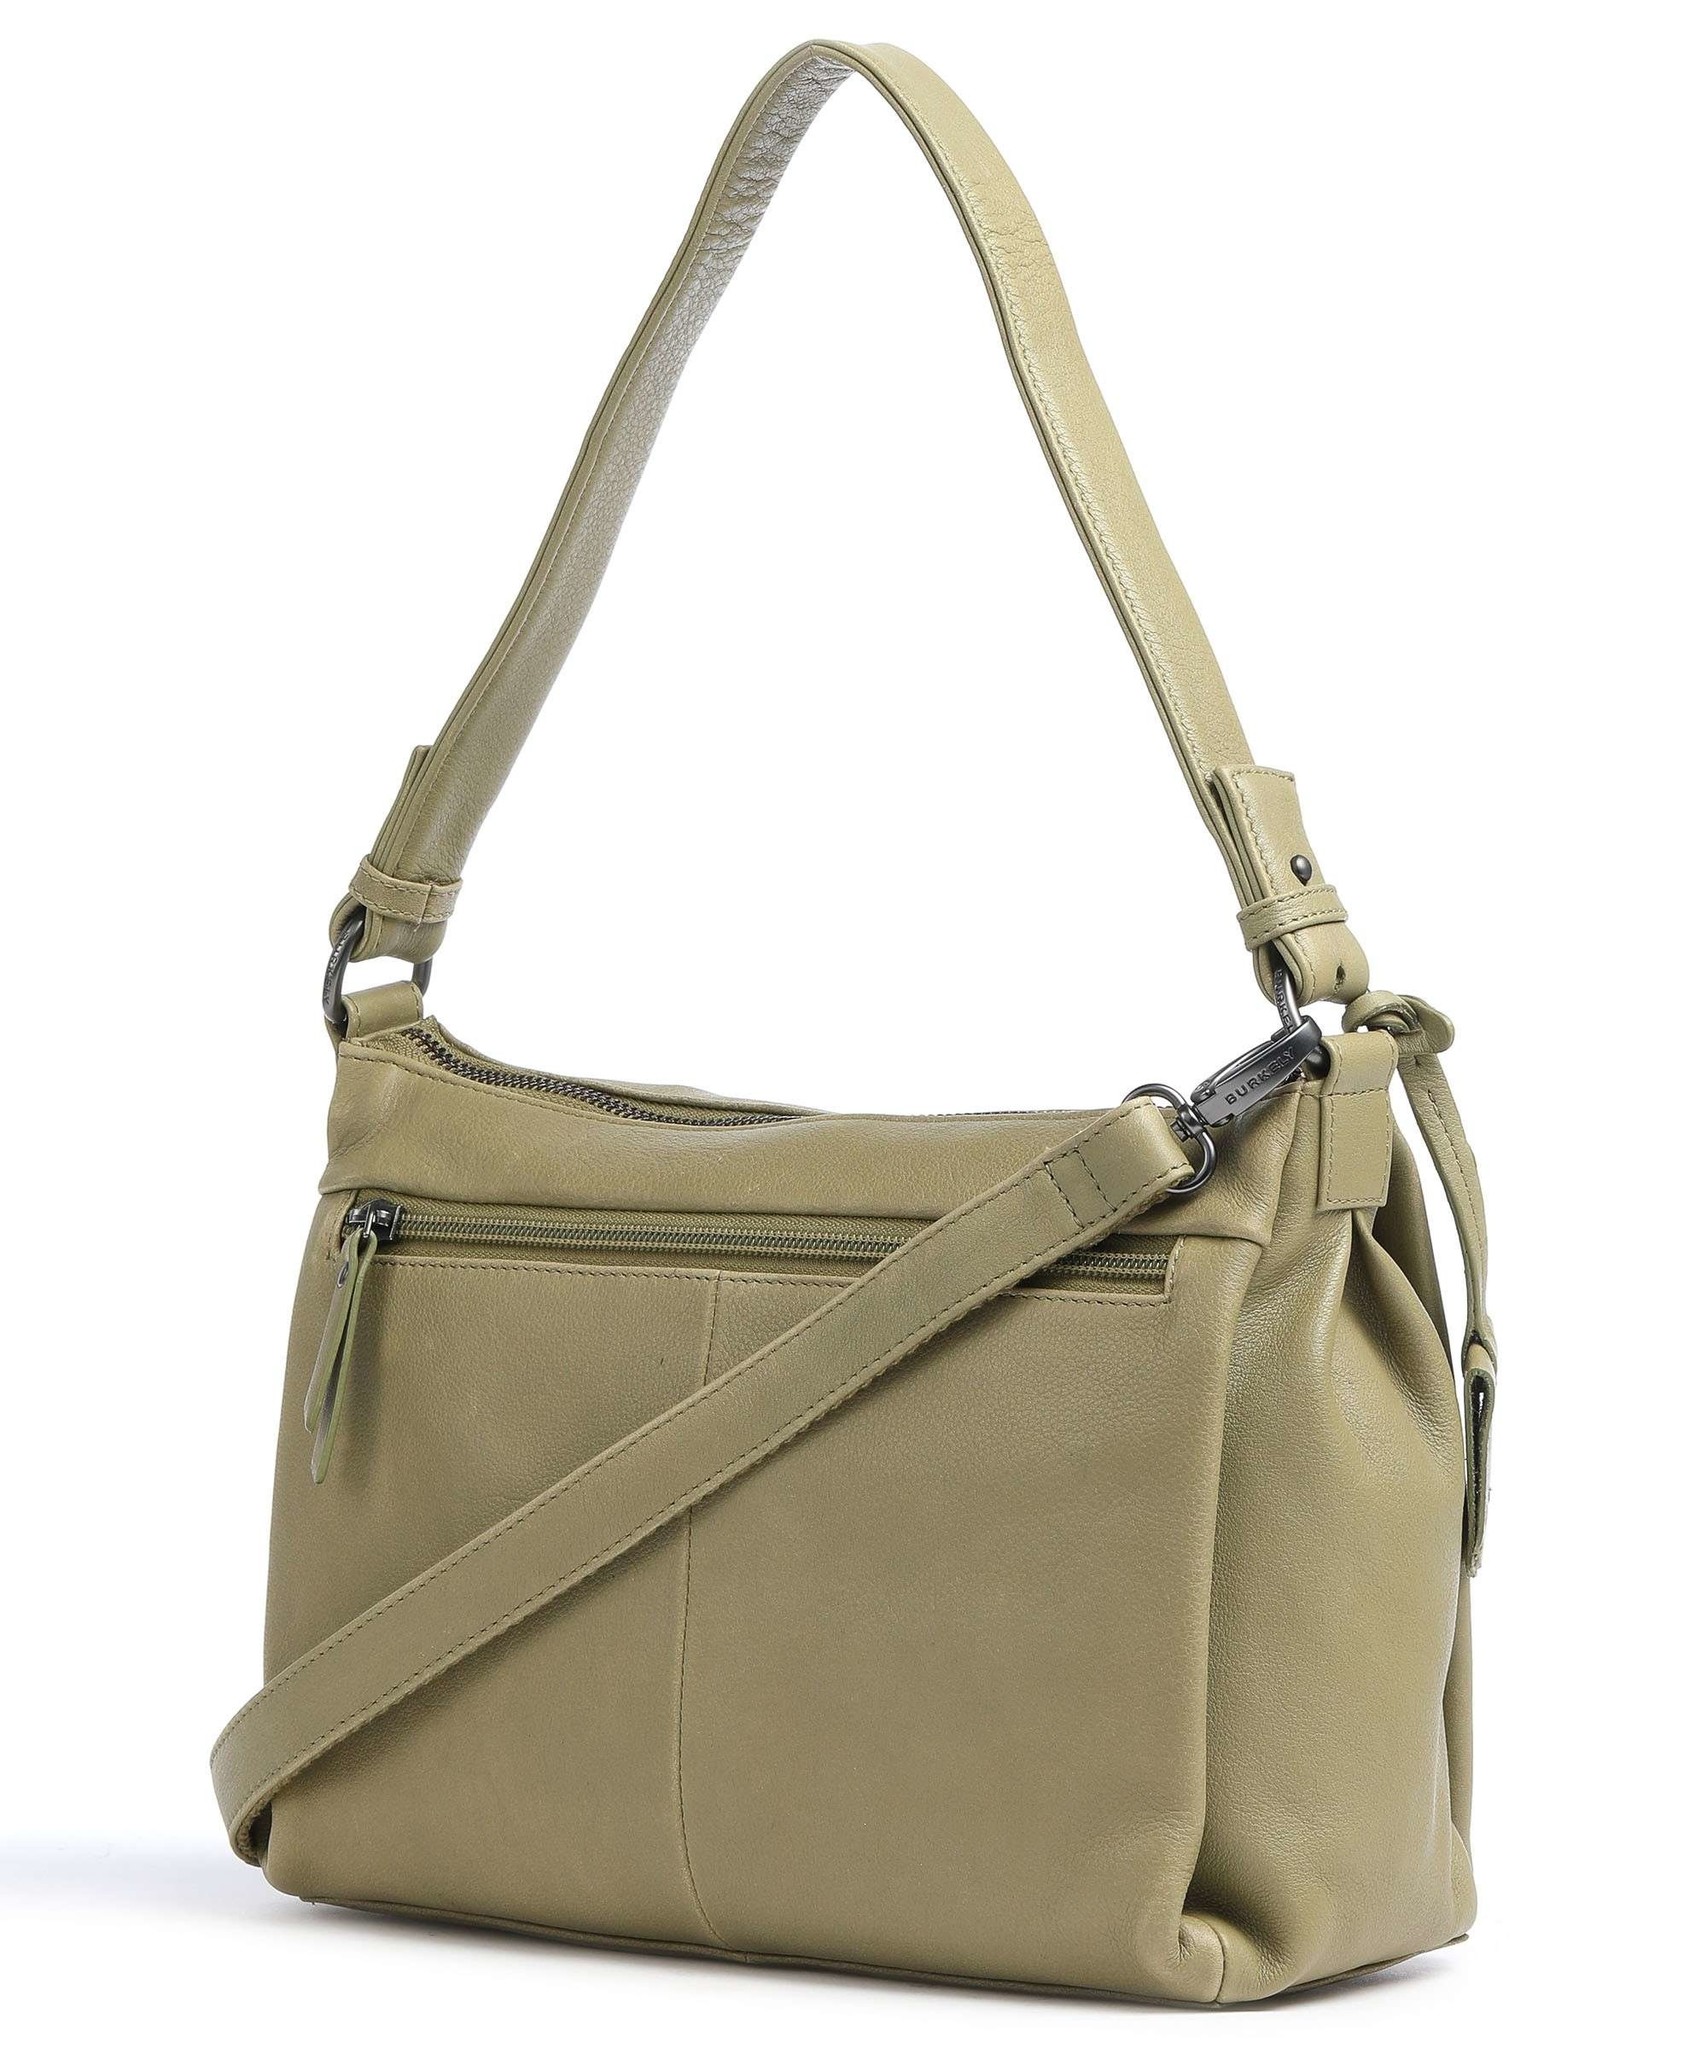 Rosetti Leather Vintage Handbags | Mercari